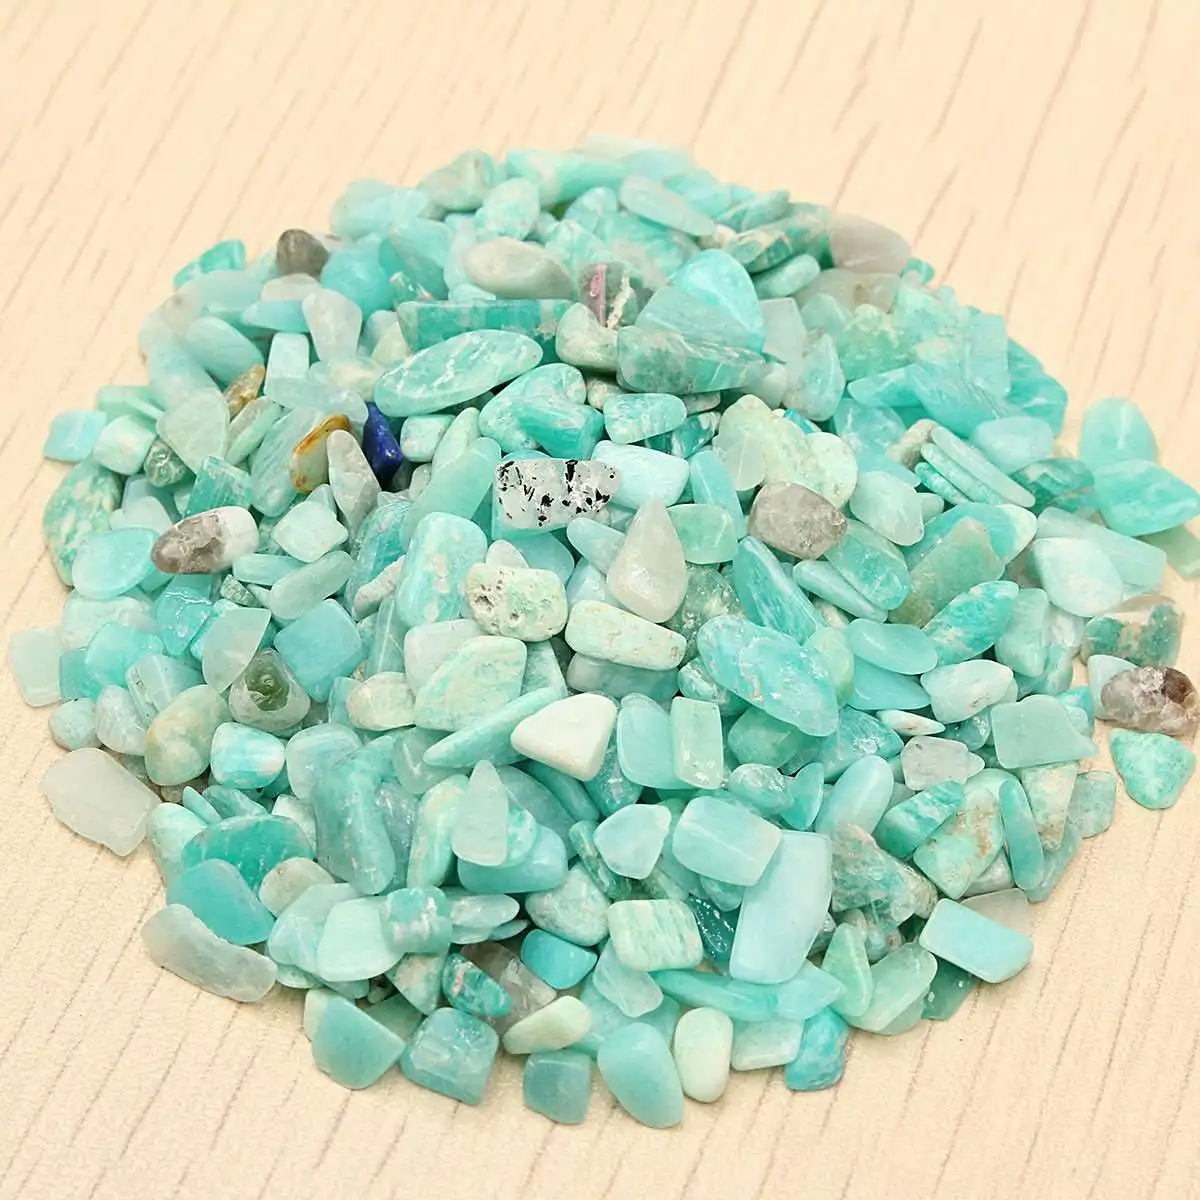 Натуральный сине-зеленый амазонит камень кристалл грубый камень минеральный образец камни украшение садового орнамента 1 упаковка 50 г 4-6 мм